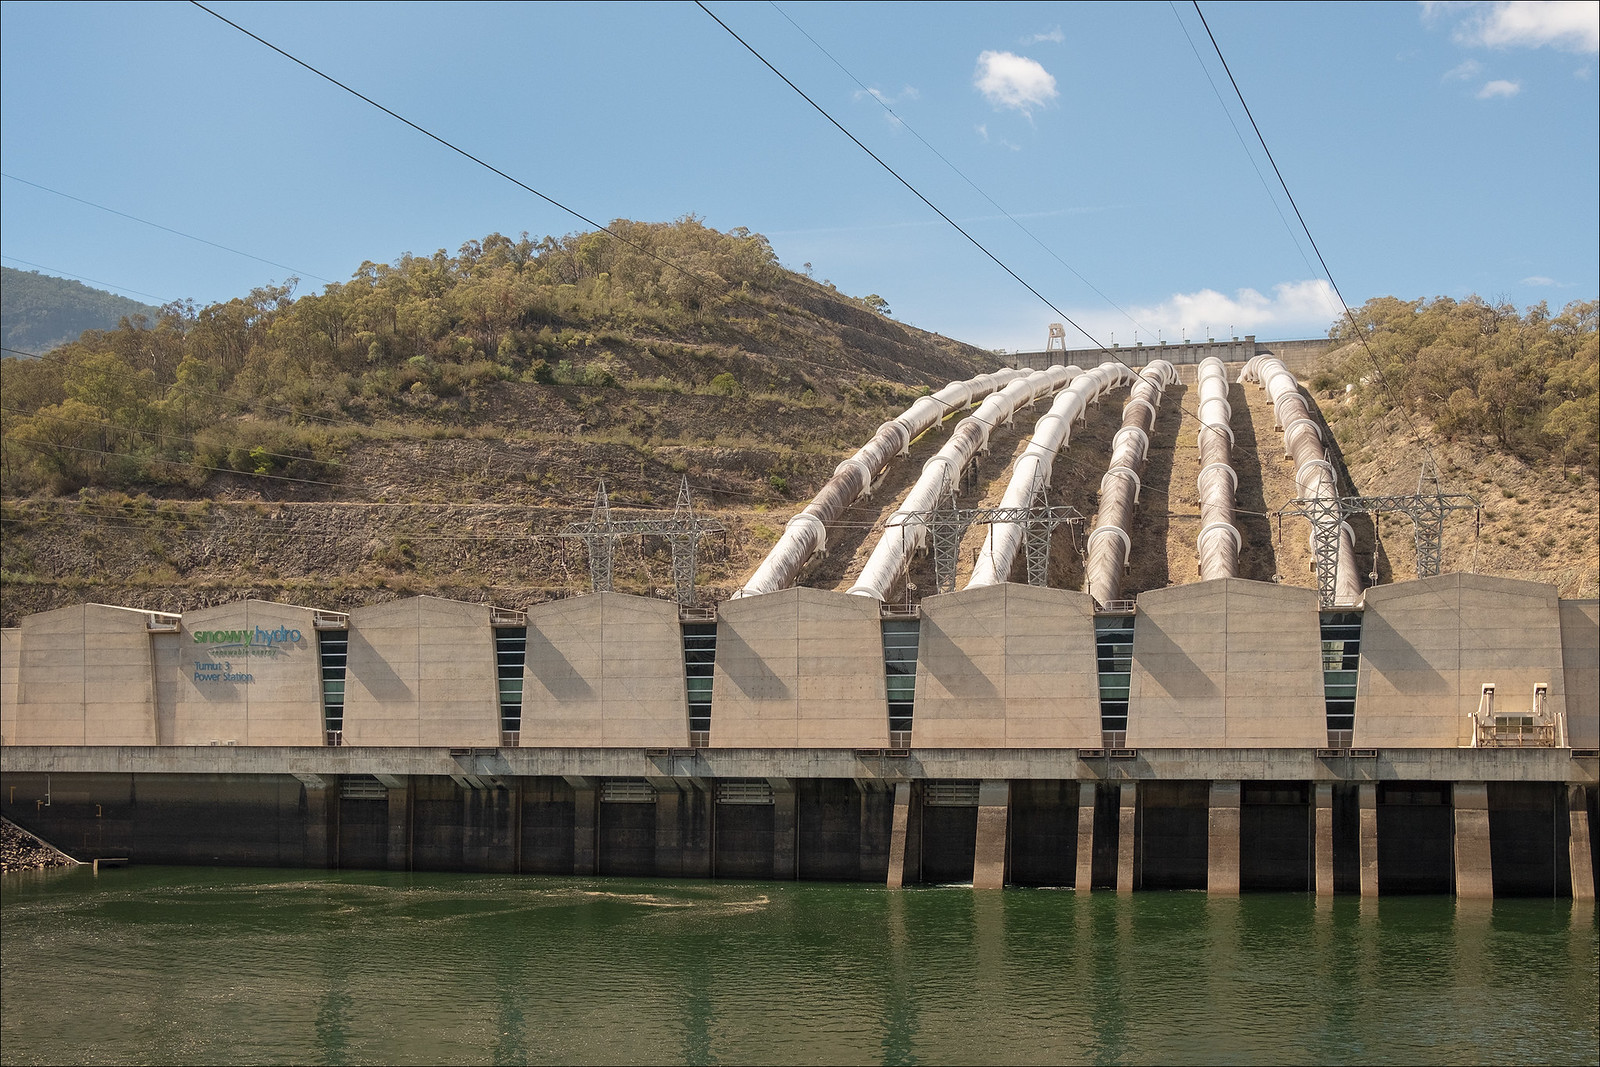 Une station de transfert d’énergie par pompage (Step) exploite la différence d'altitude entre deux réservoirs d’eau pour stocker l’électricité. © Peter Williams, Flickr